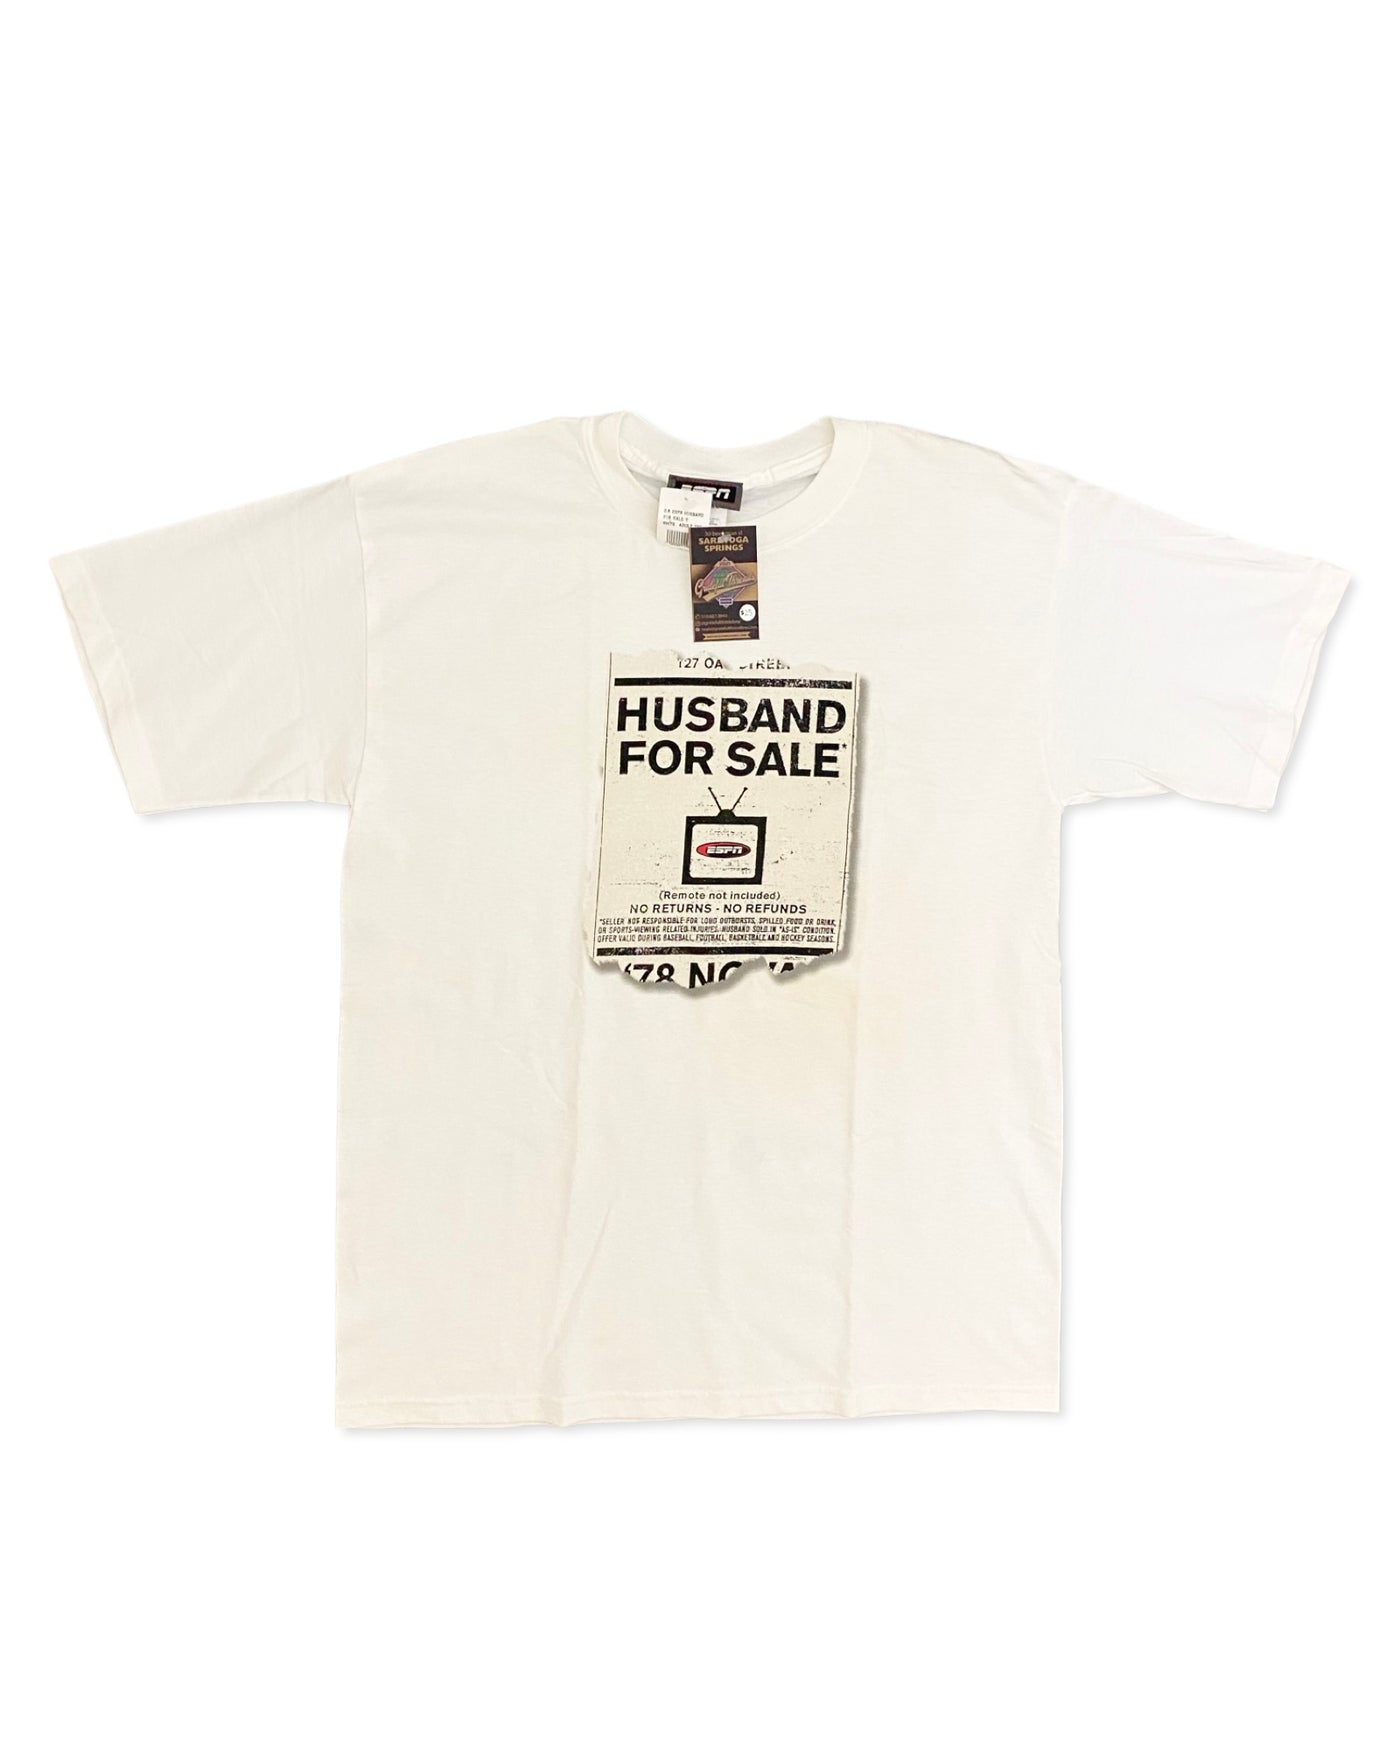 Vintage ‘Husband for Sale’ ESPN T-Shirt